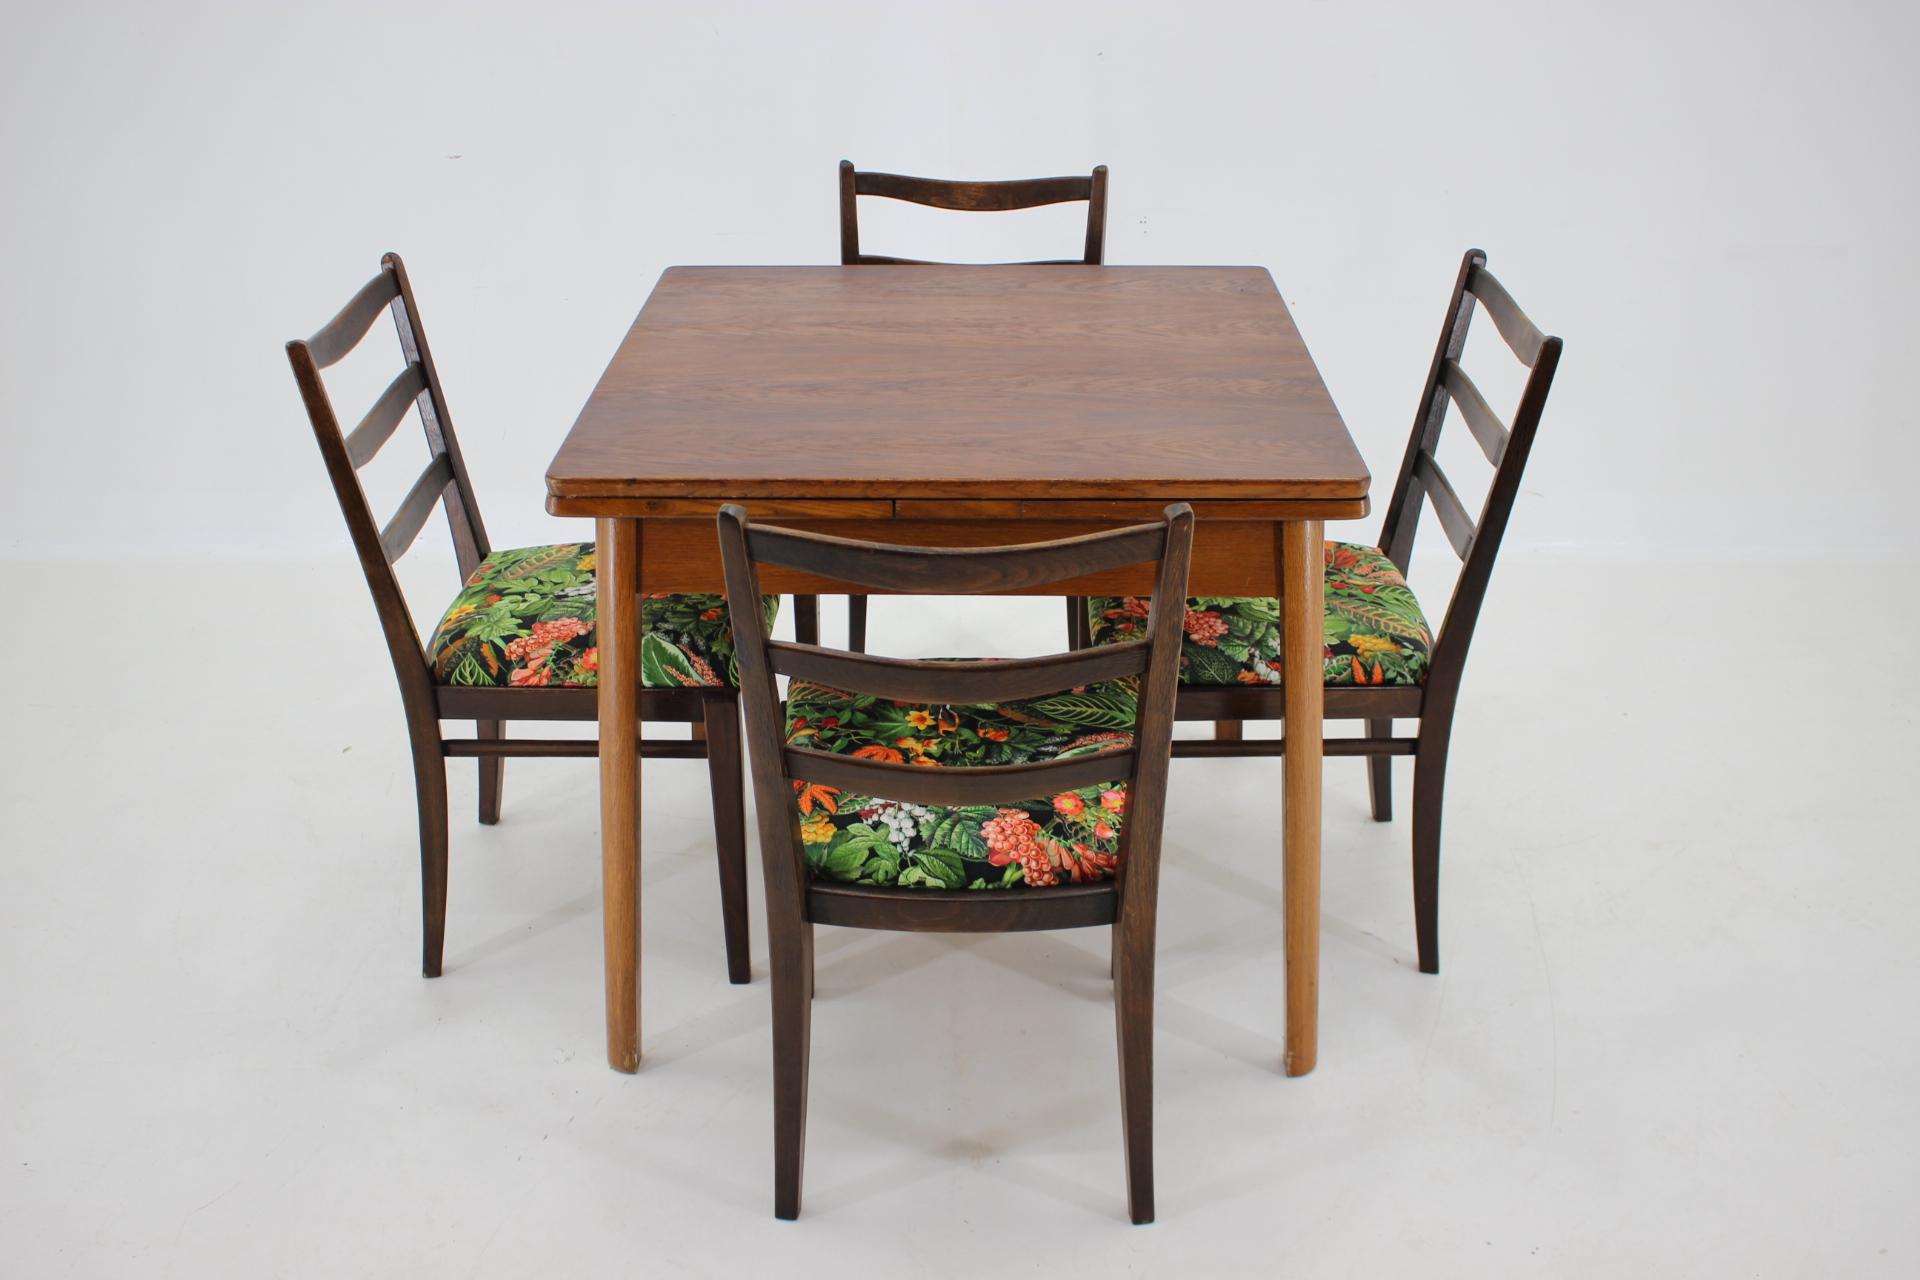 - guter Originalzustand mit geringen Gebrauchsspuren
- Die Stühle wurden neu gepolstert
- Tisch in Eiche-Dekor 
- Stühle aus gebeiztem Buchenholz
- Abmessungen der Stühle: Höhe 86 cm, Sitzhöhe 47 cm, Breite 44 cm, 
                                  